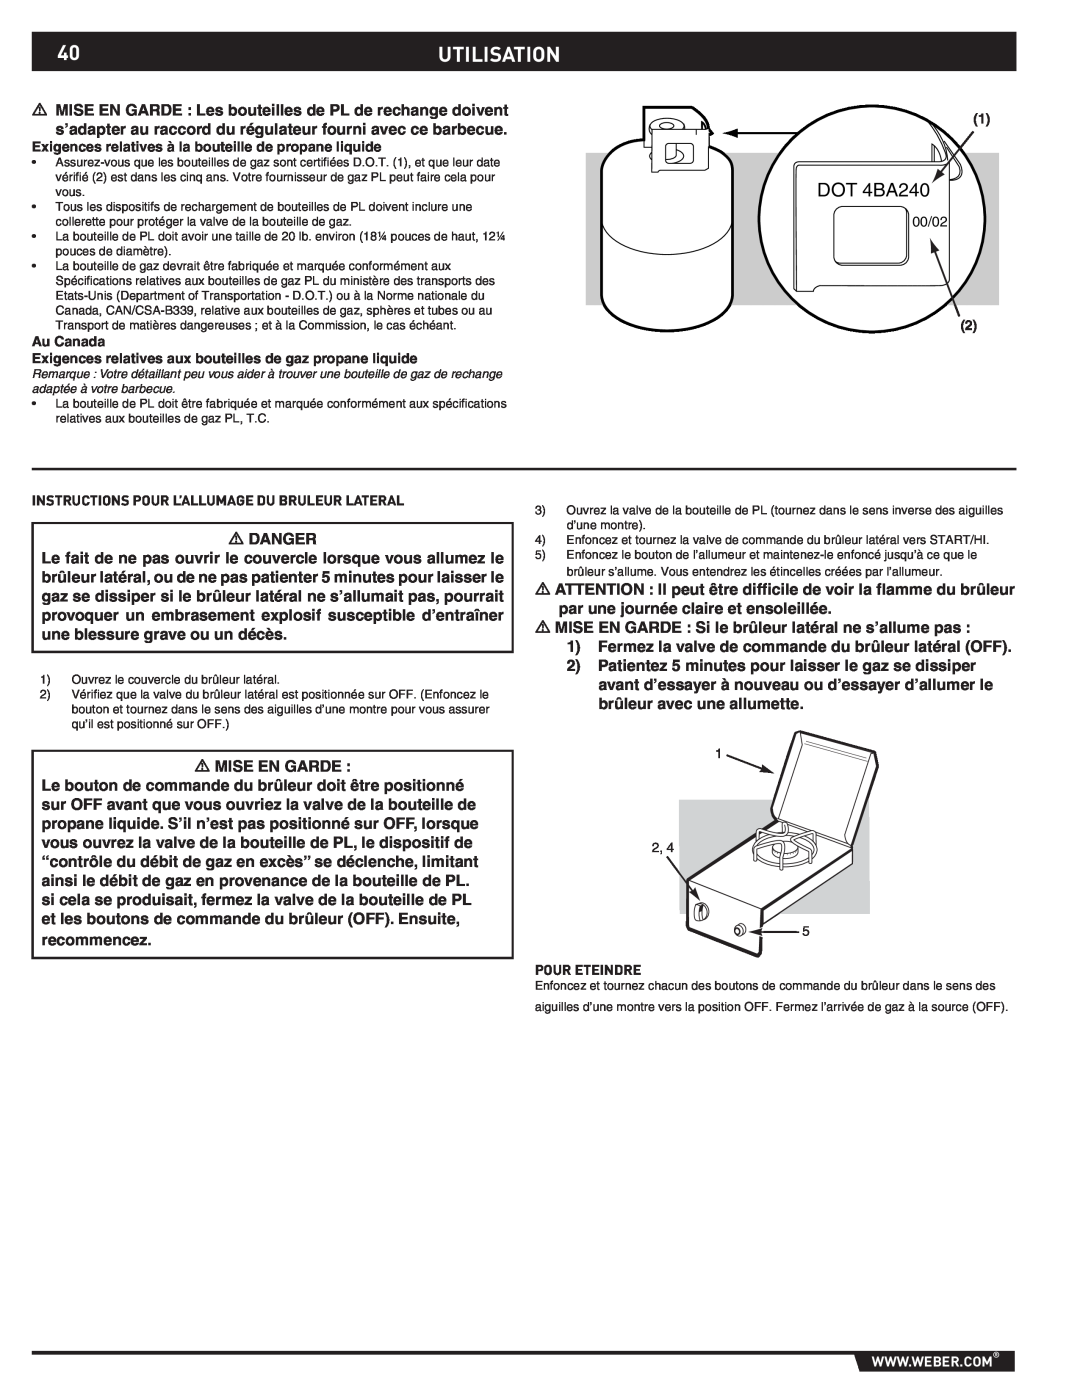 Weber 89796 manual 40UTILISATION, DOT 4BA240 